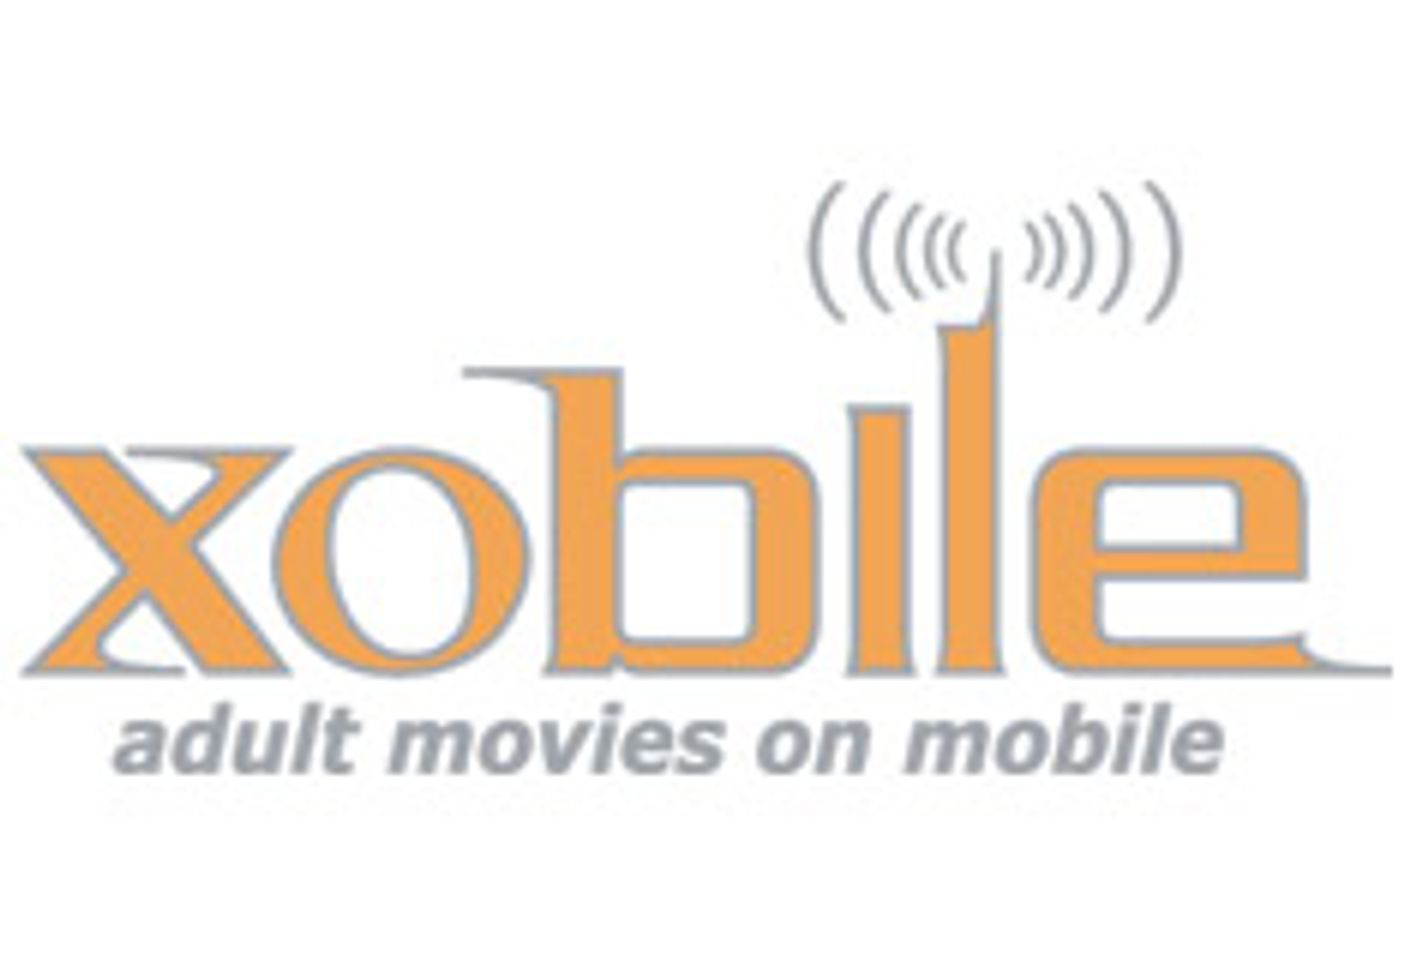 Xobile Launching White Label Program, Sin City First Partner